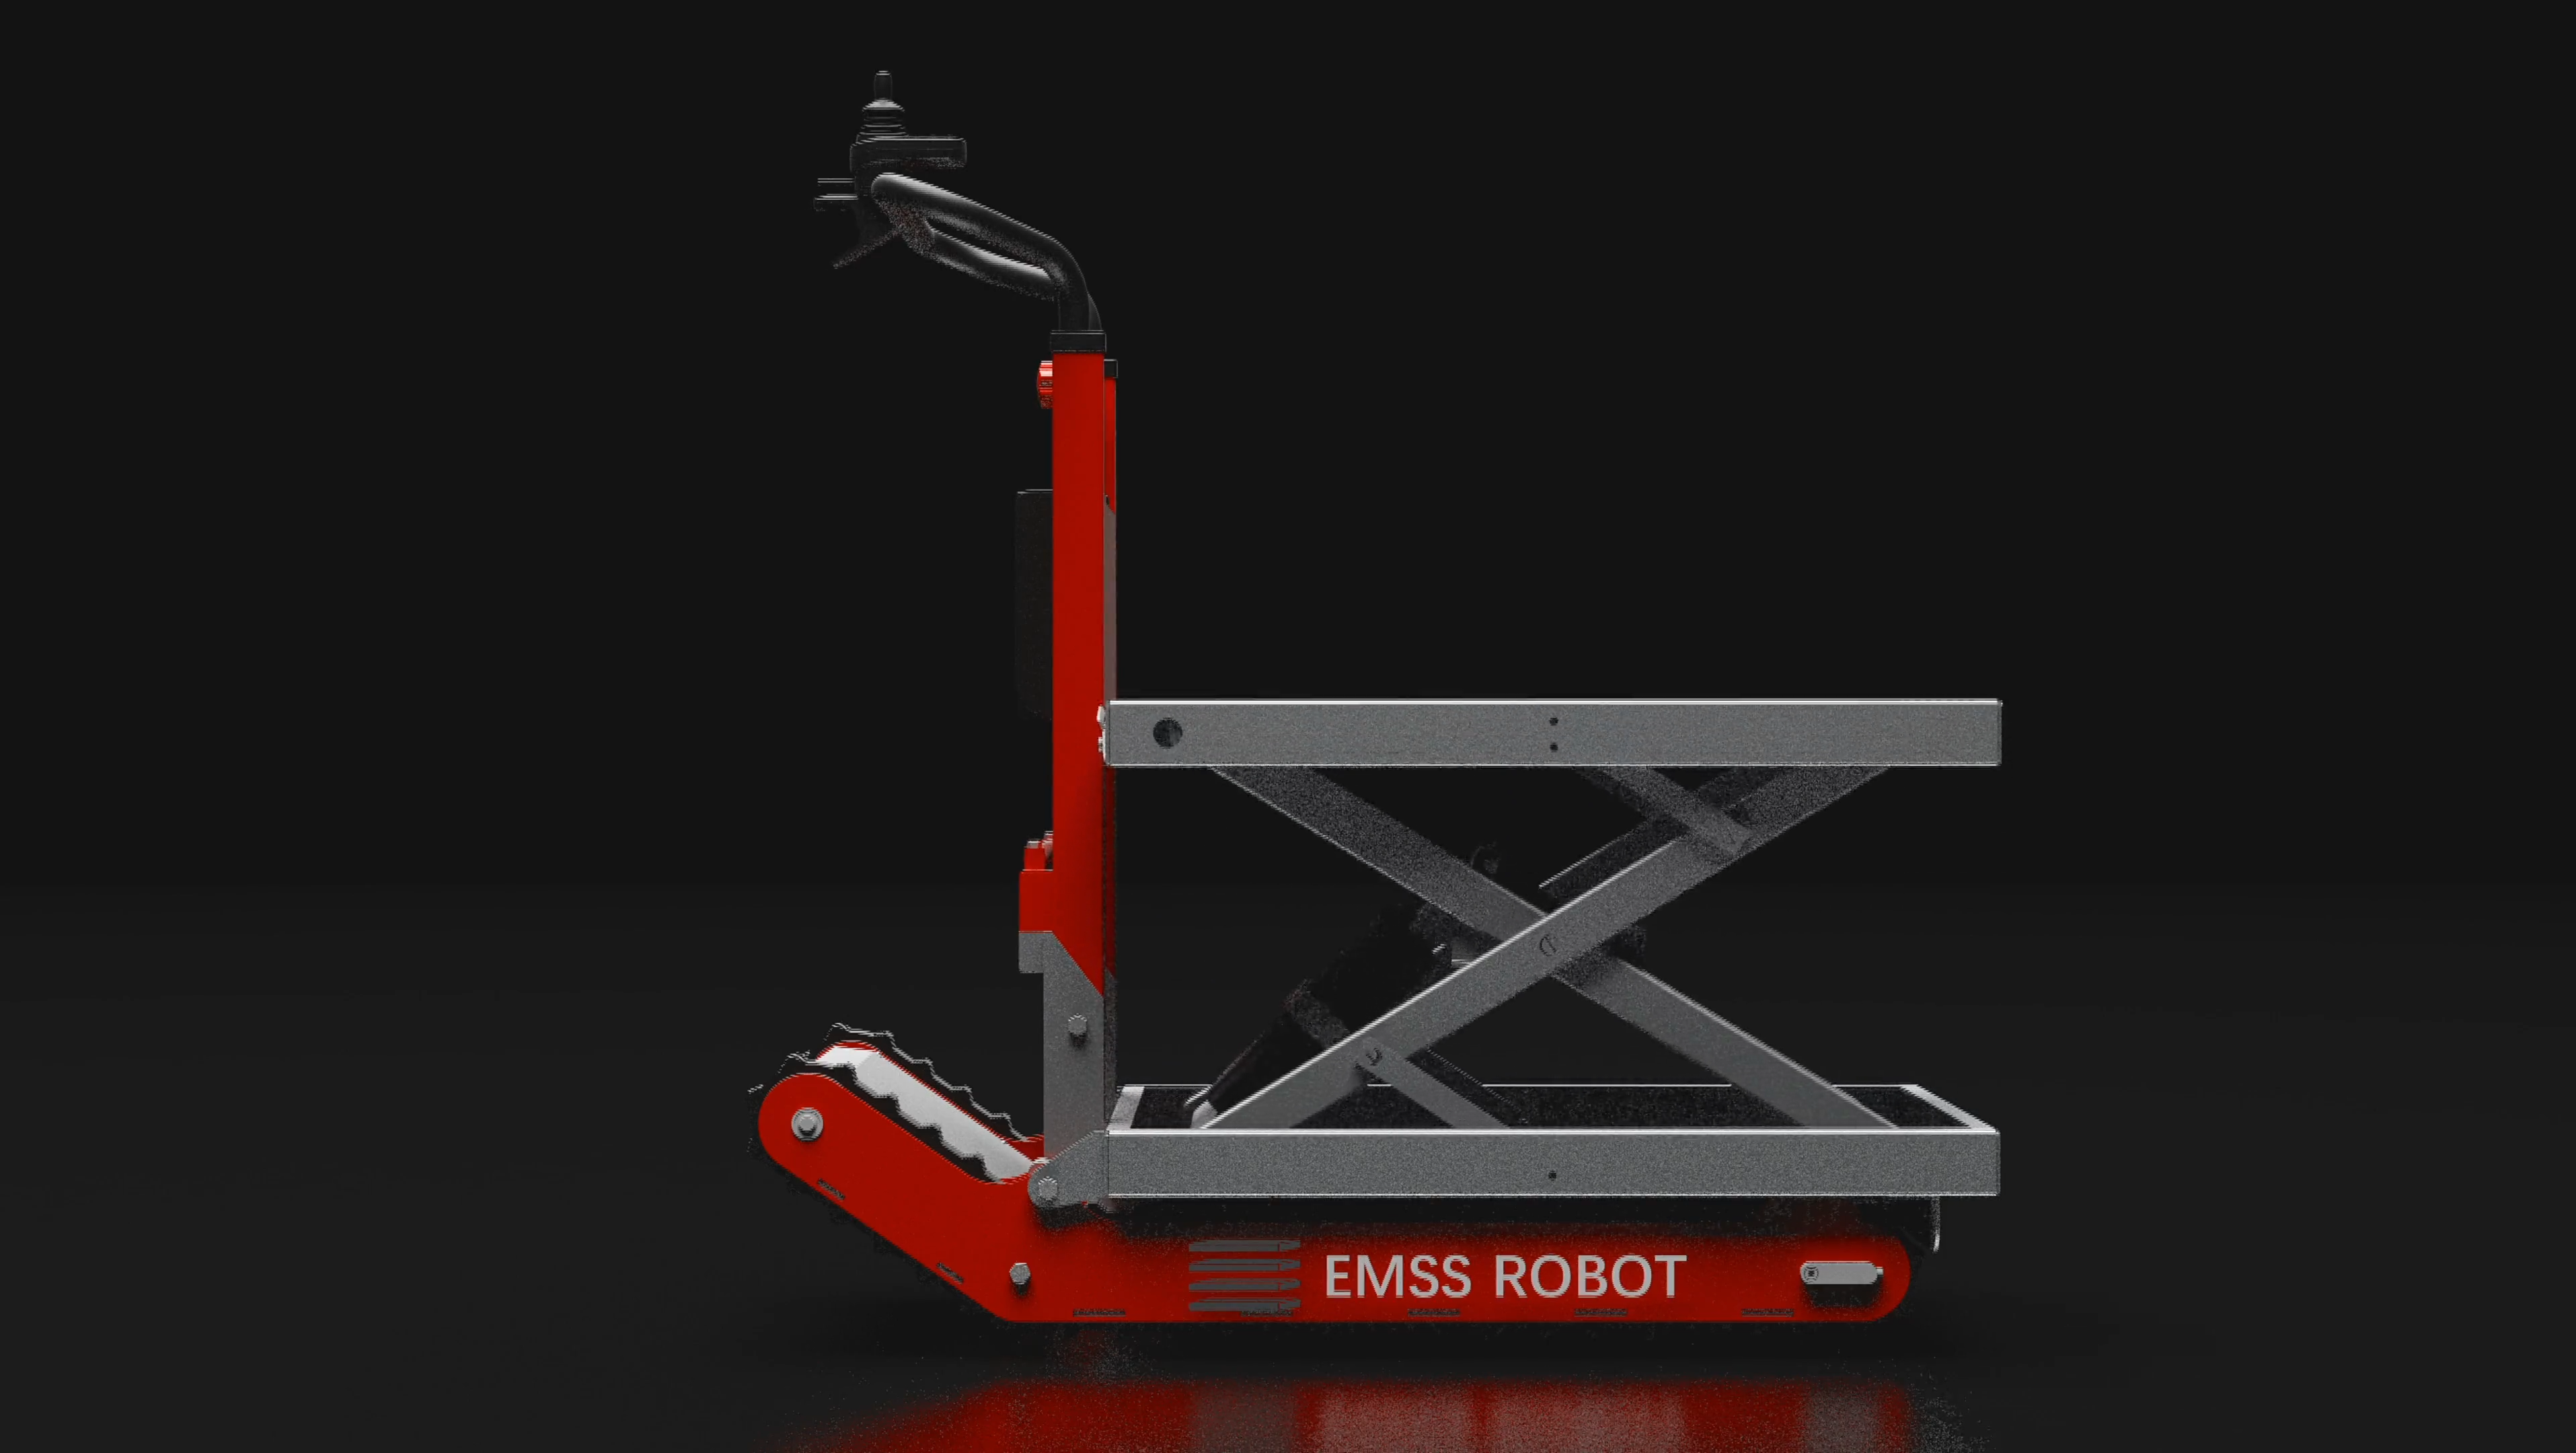 EmssRobot 11TS 